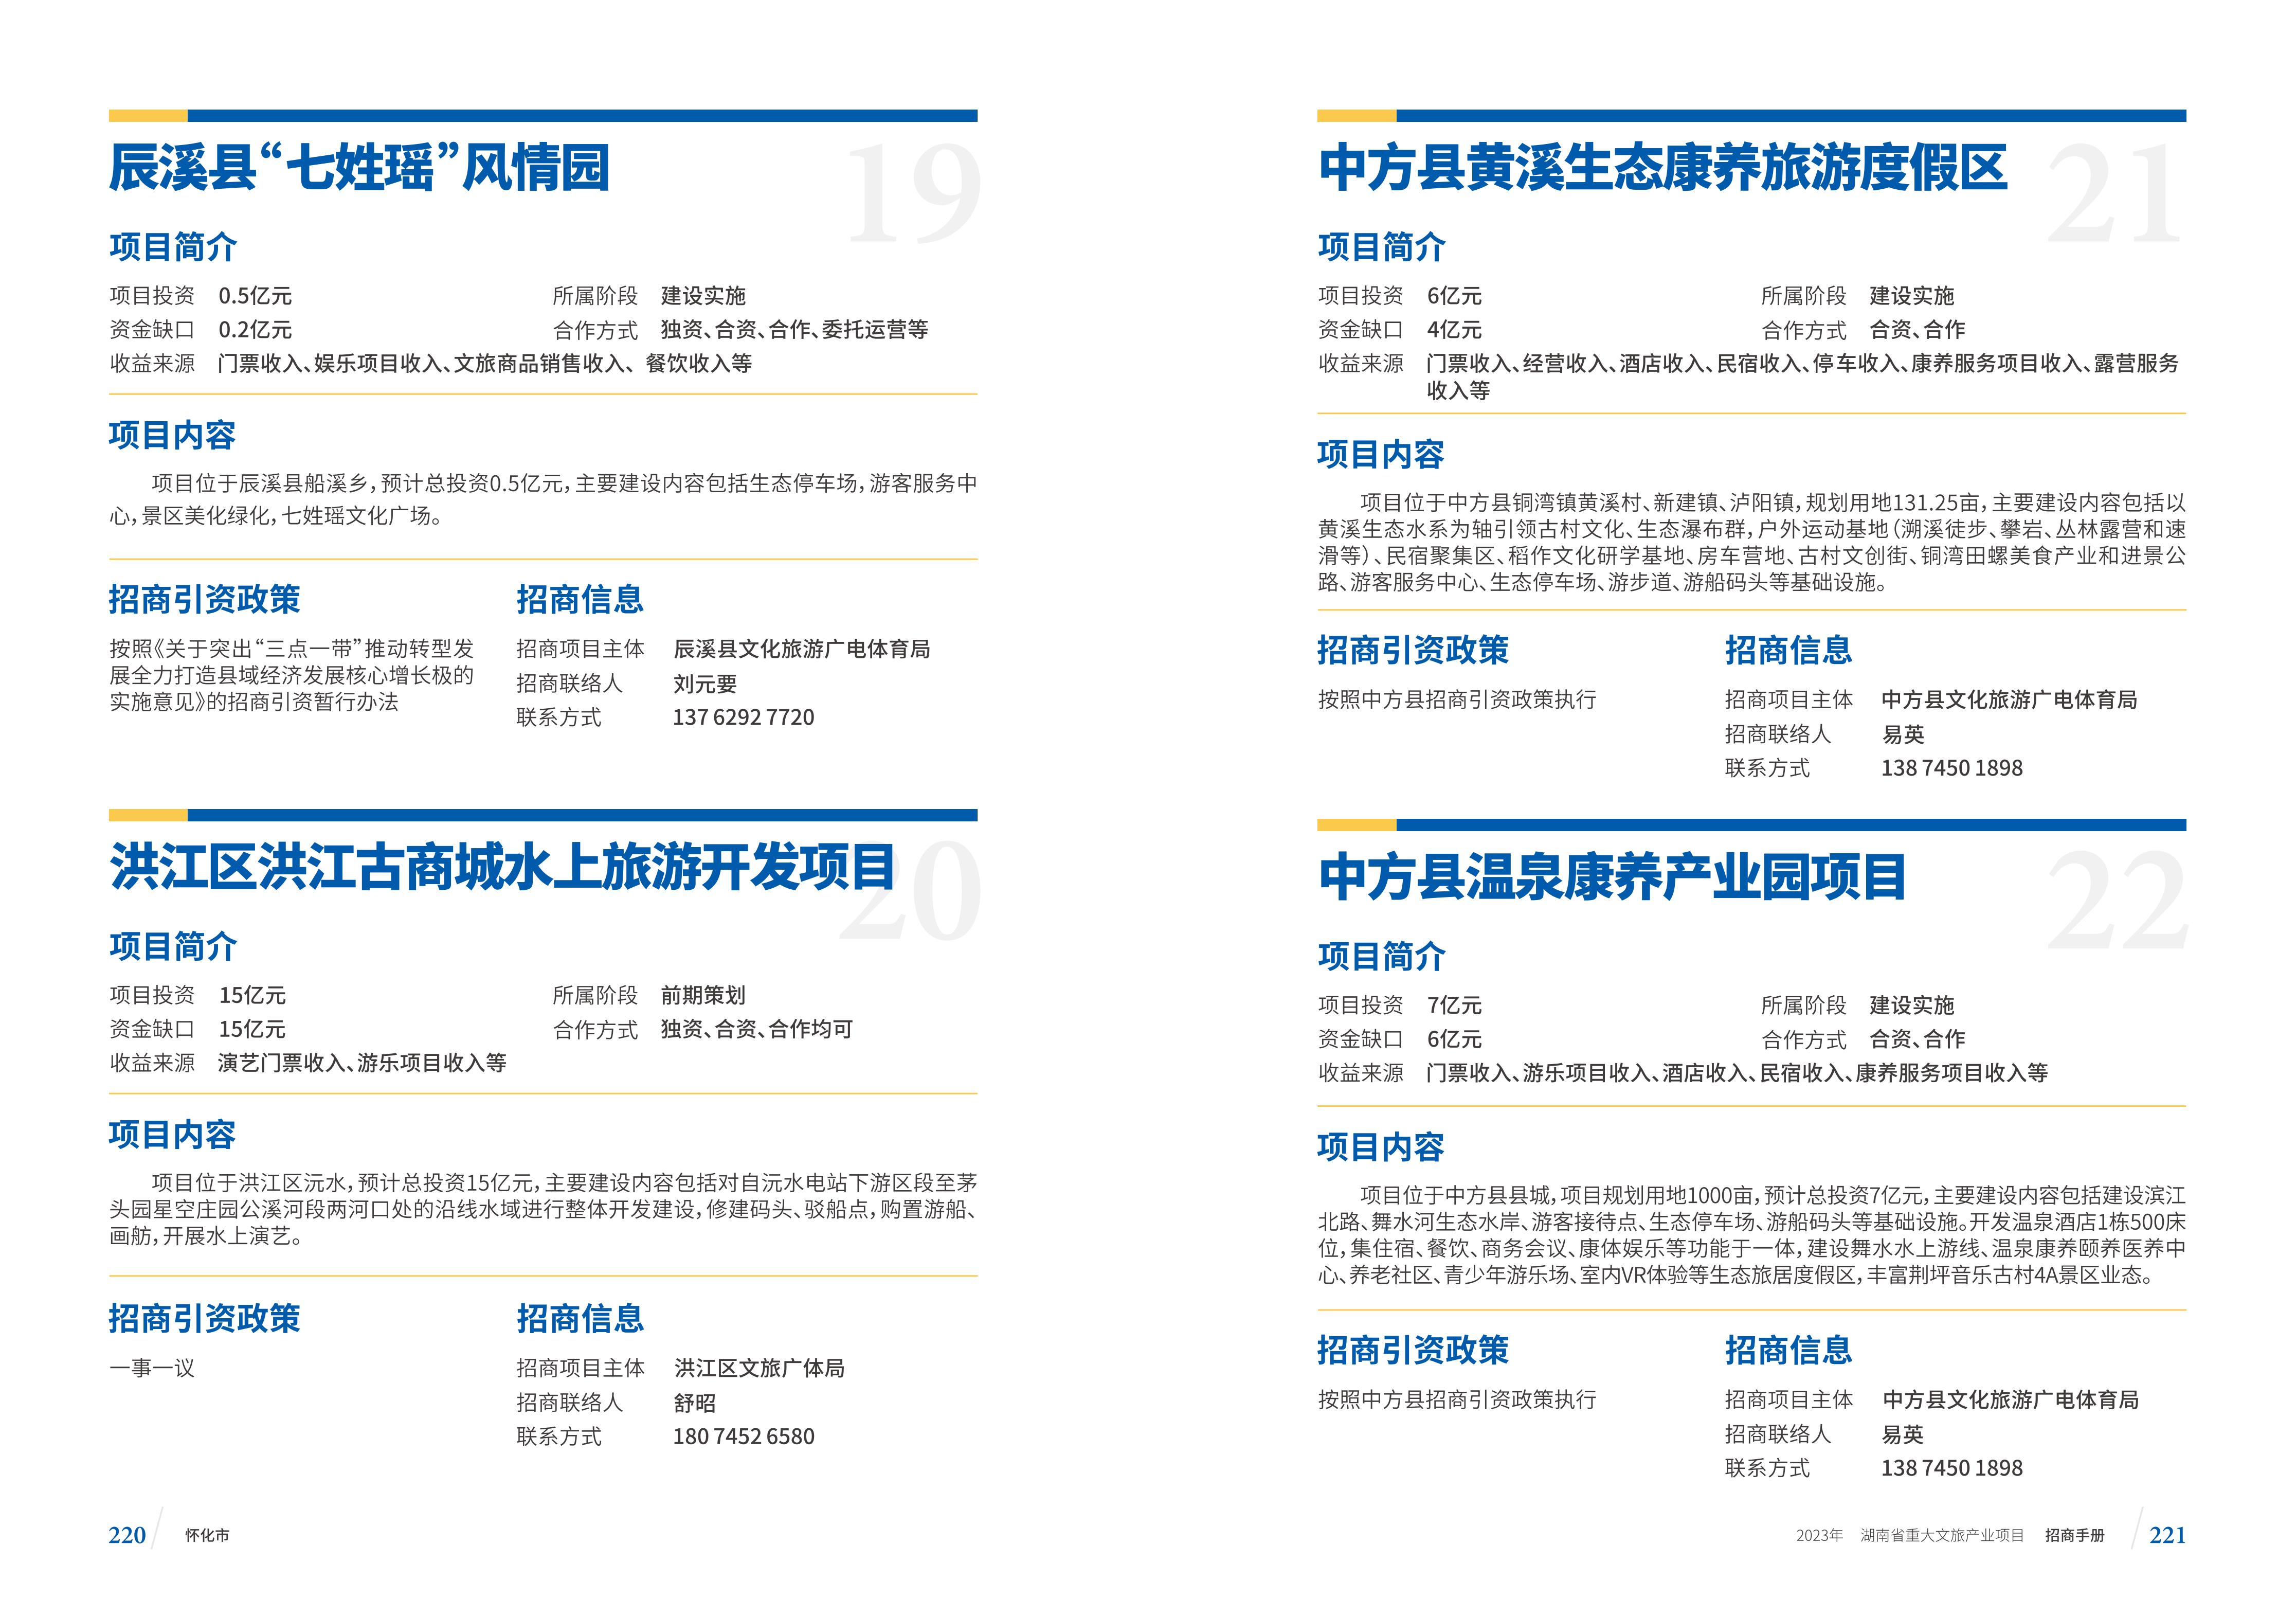 湖南省重大文旅产业项目招手册线上链接版_118.jpg